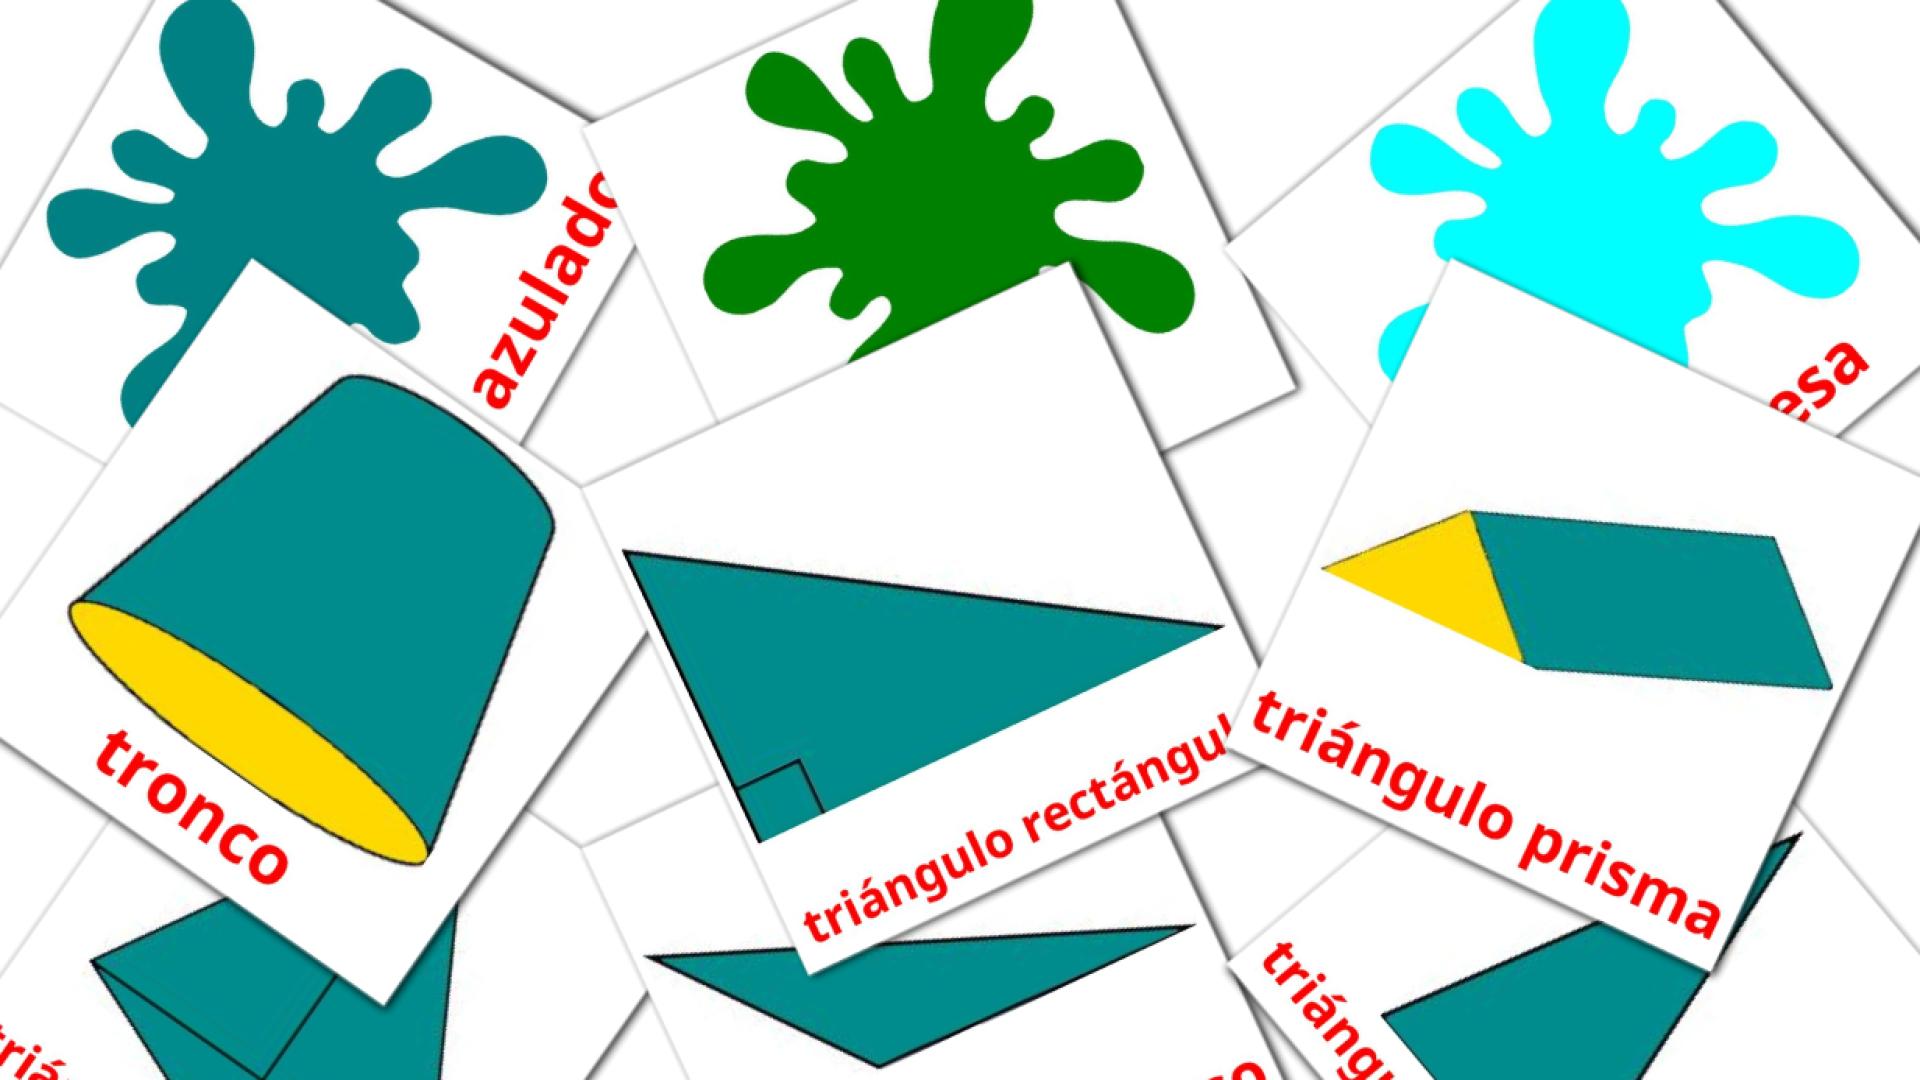 punjabi(gurmukhi) tarjetas de vocabulario en Colores y formas